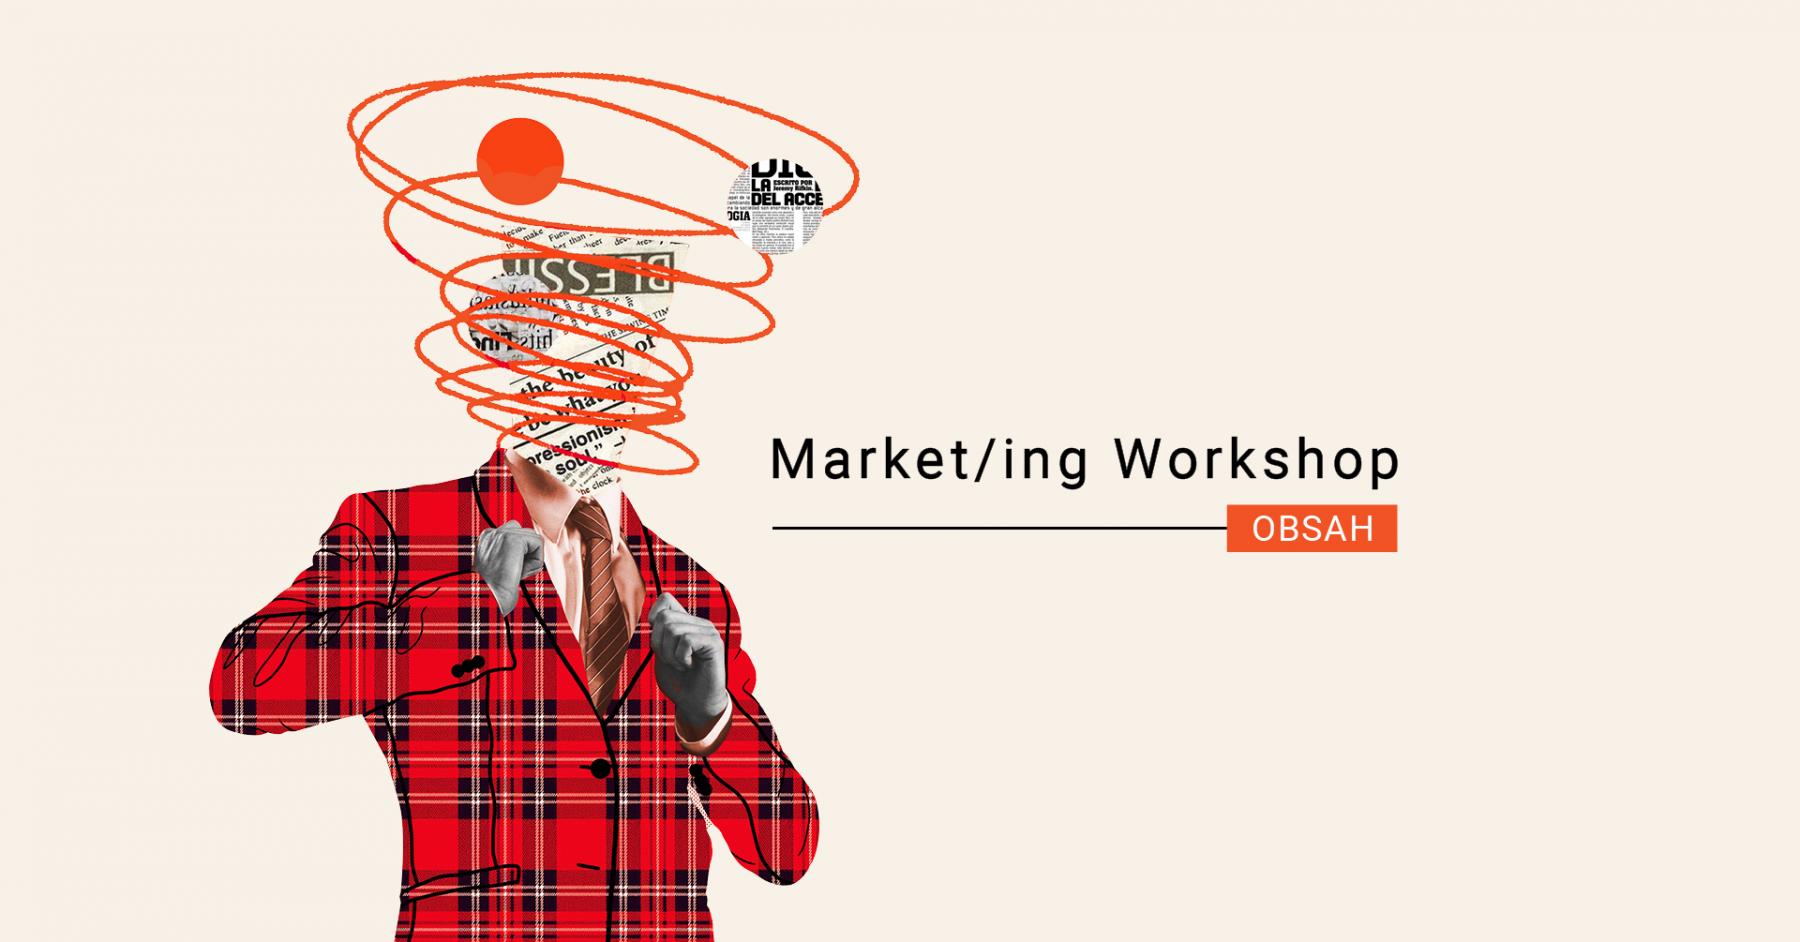 Market/ing Workshop: Obsah